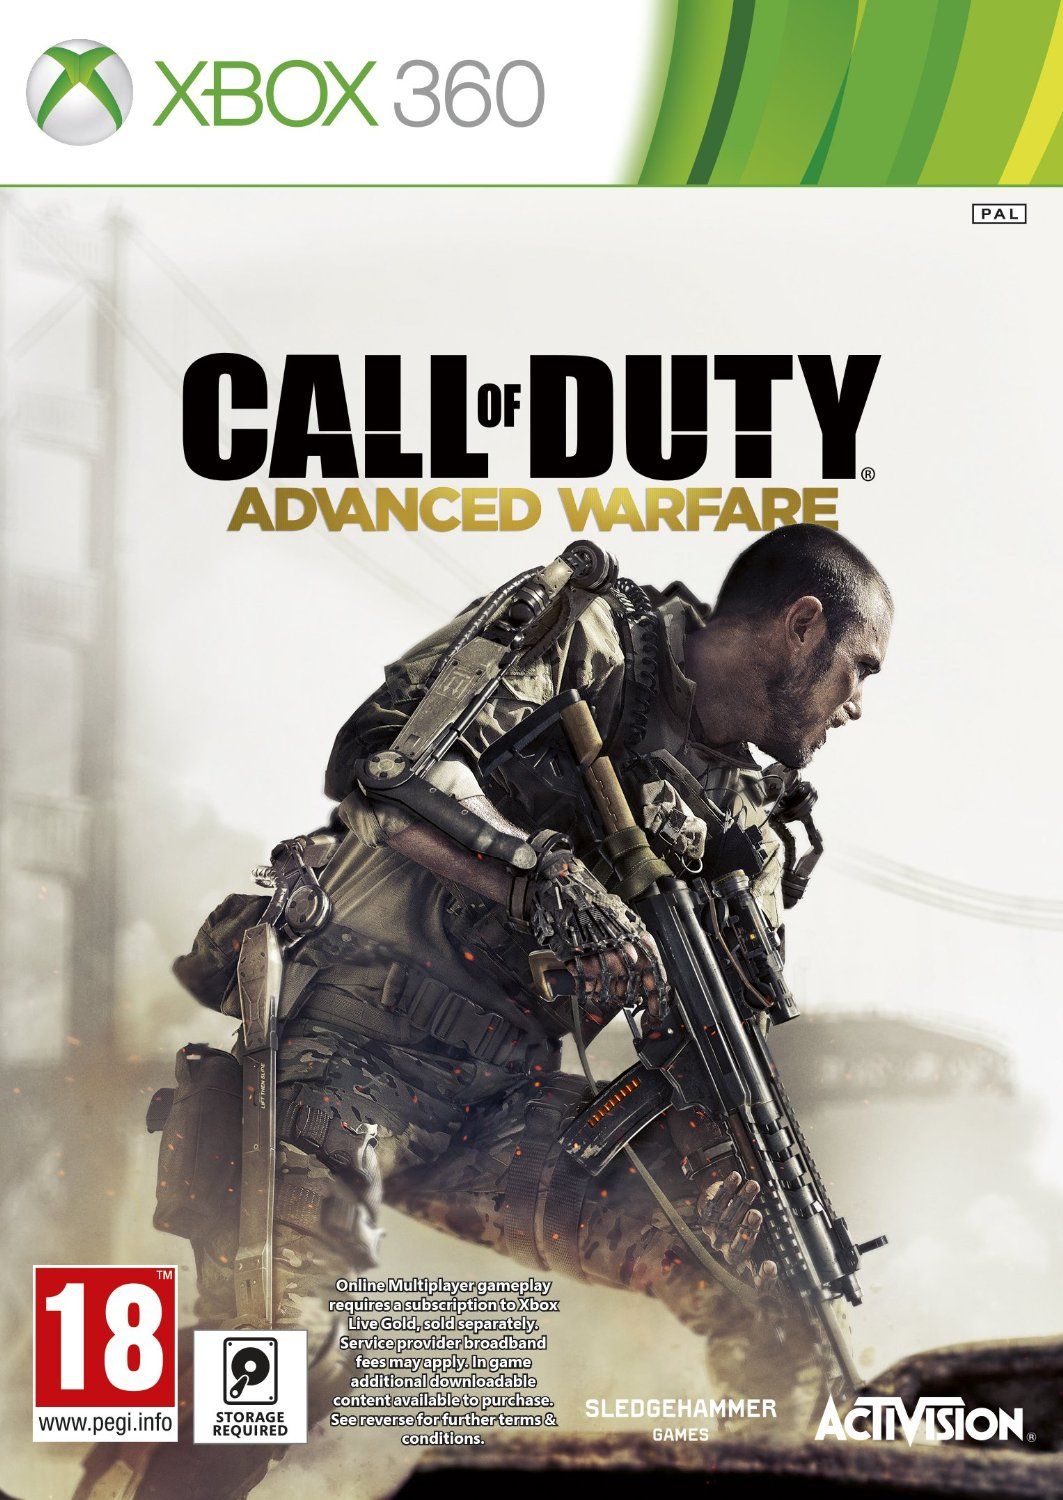 Xbox 360 Call of Duty: Advanced Warfare - Xbox One Compatible